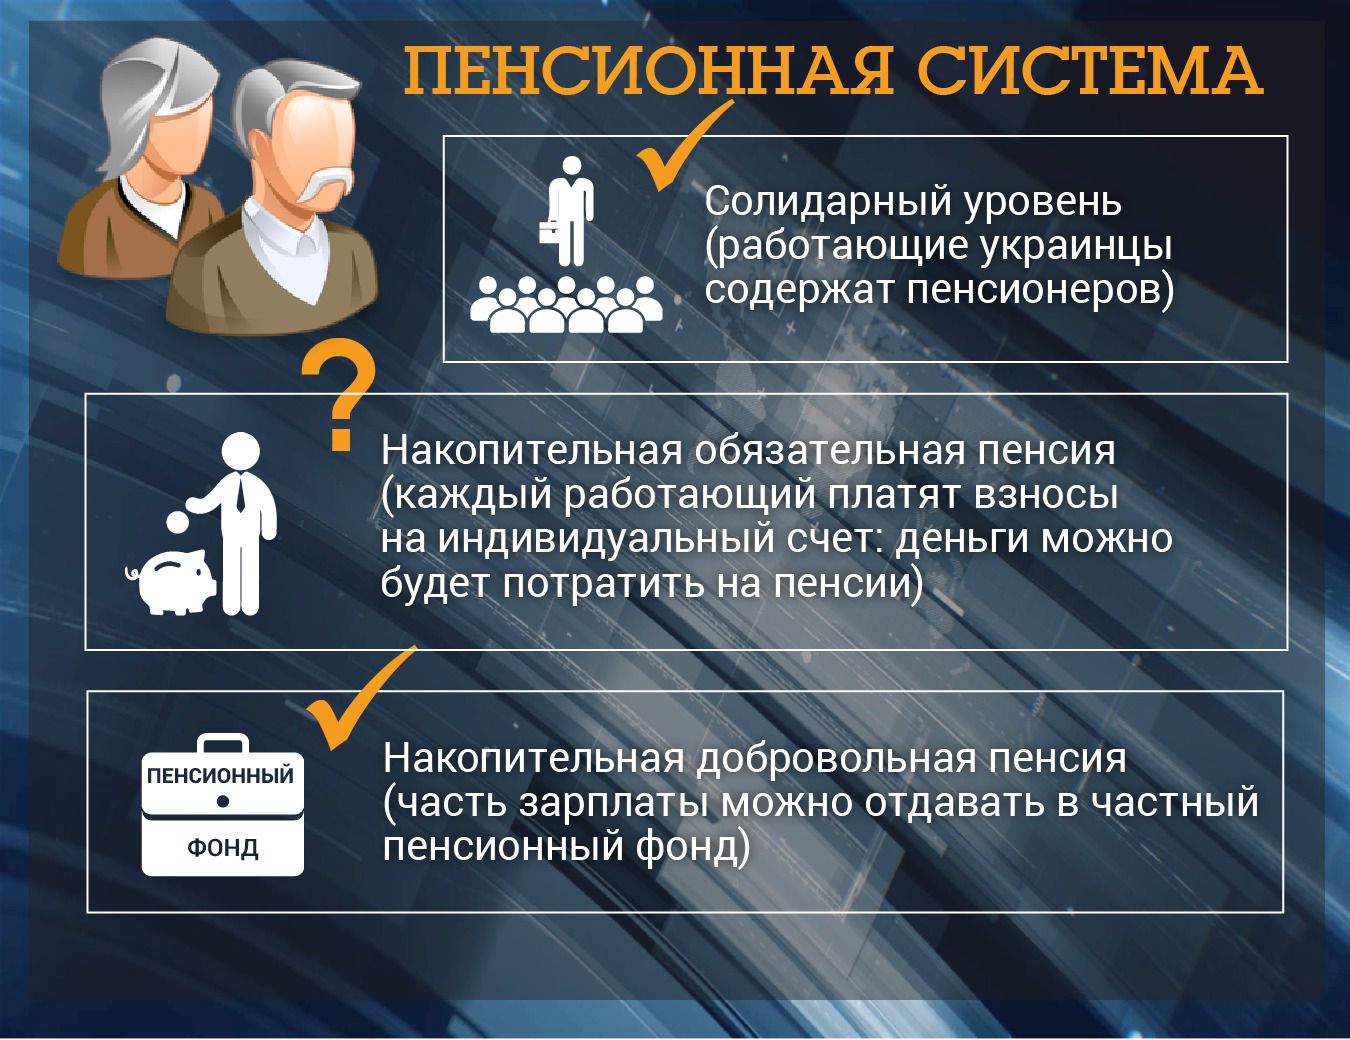 Нові подробиці пенсійної революції в Україні: що буде з пенсійним віком, пенсіями та податками. За словами віце-прем'єра Павла Розенка, накопичувальний рівень можна запустити вже у 2018 році.